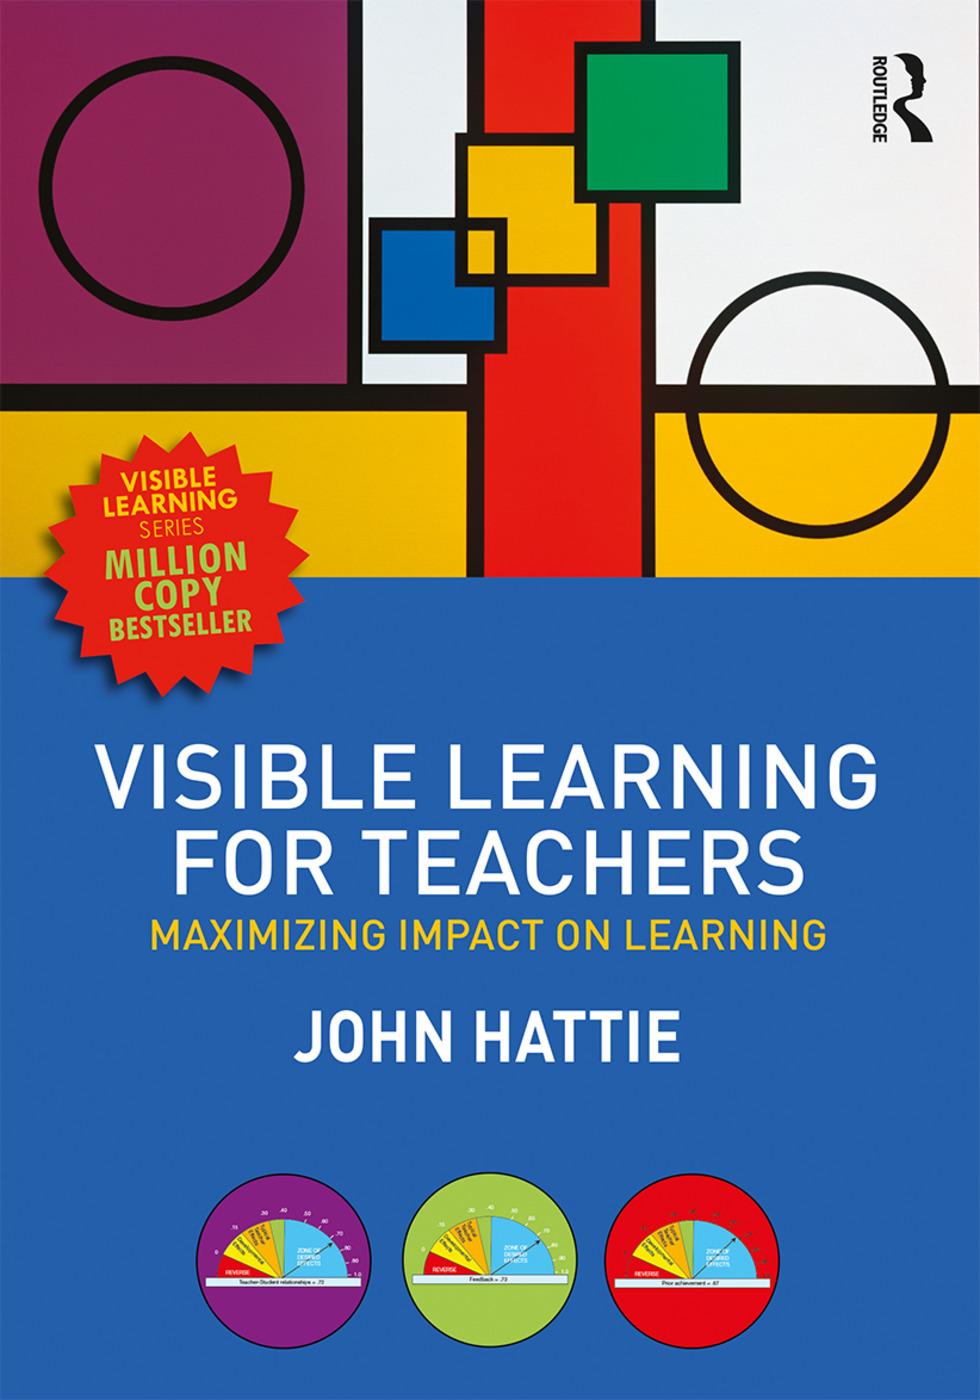 Visible Learning for Teachers - John Hattie (University of Melbourne, Australia)